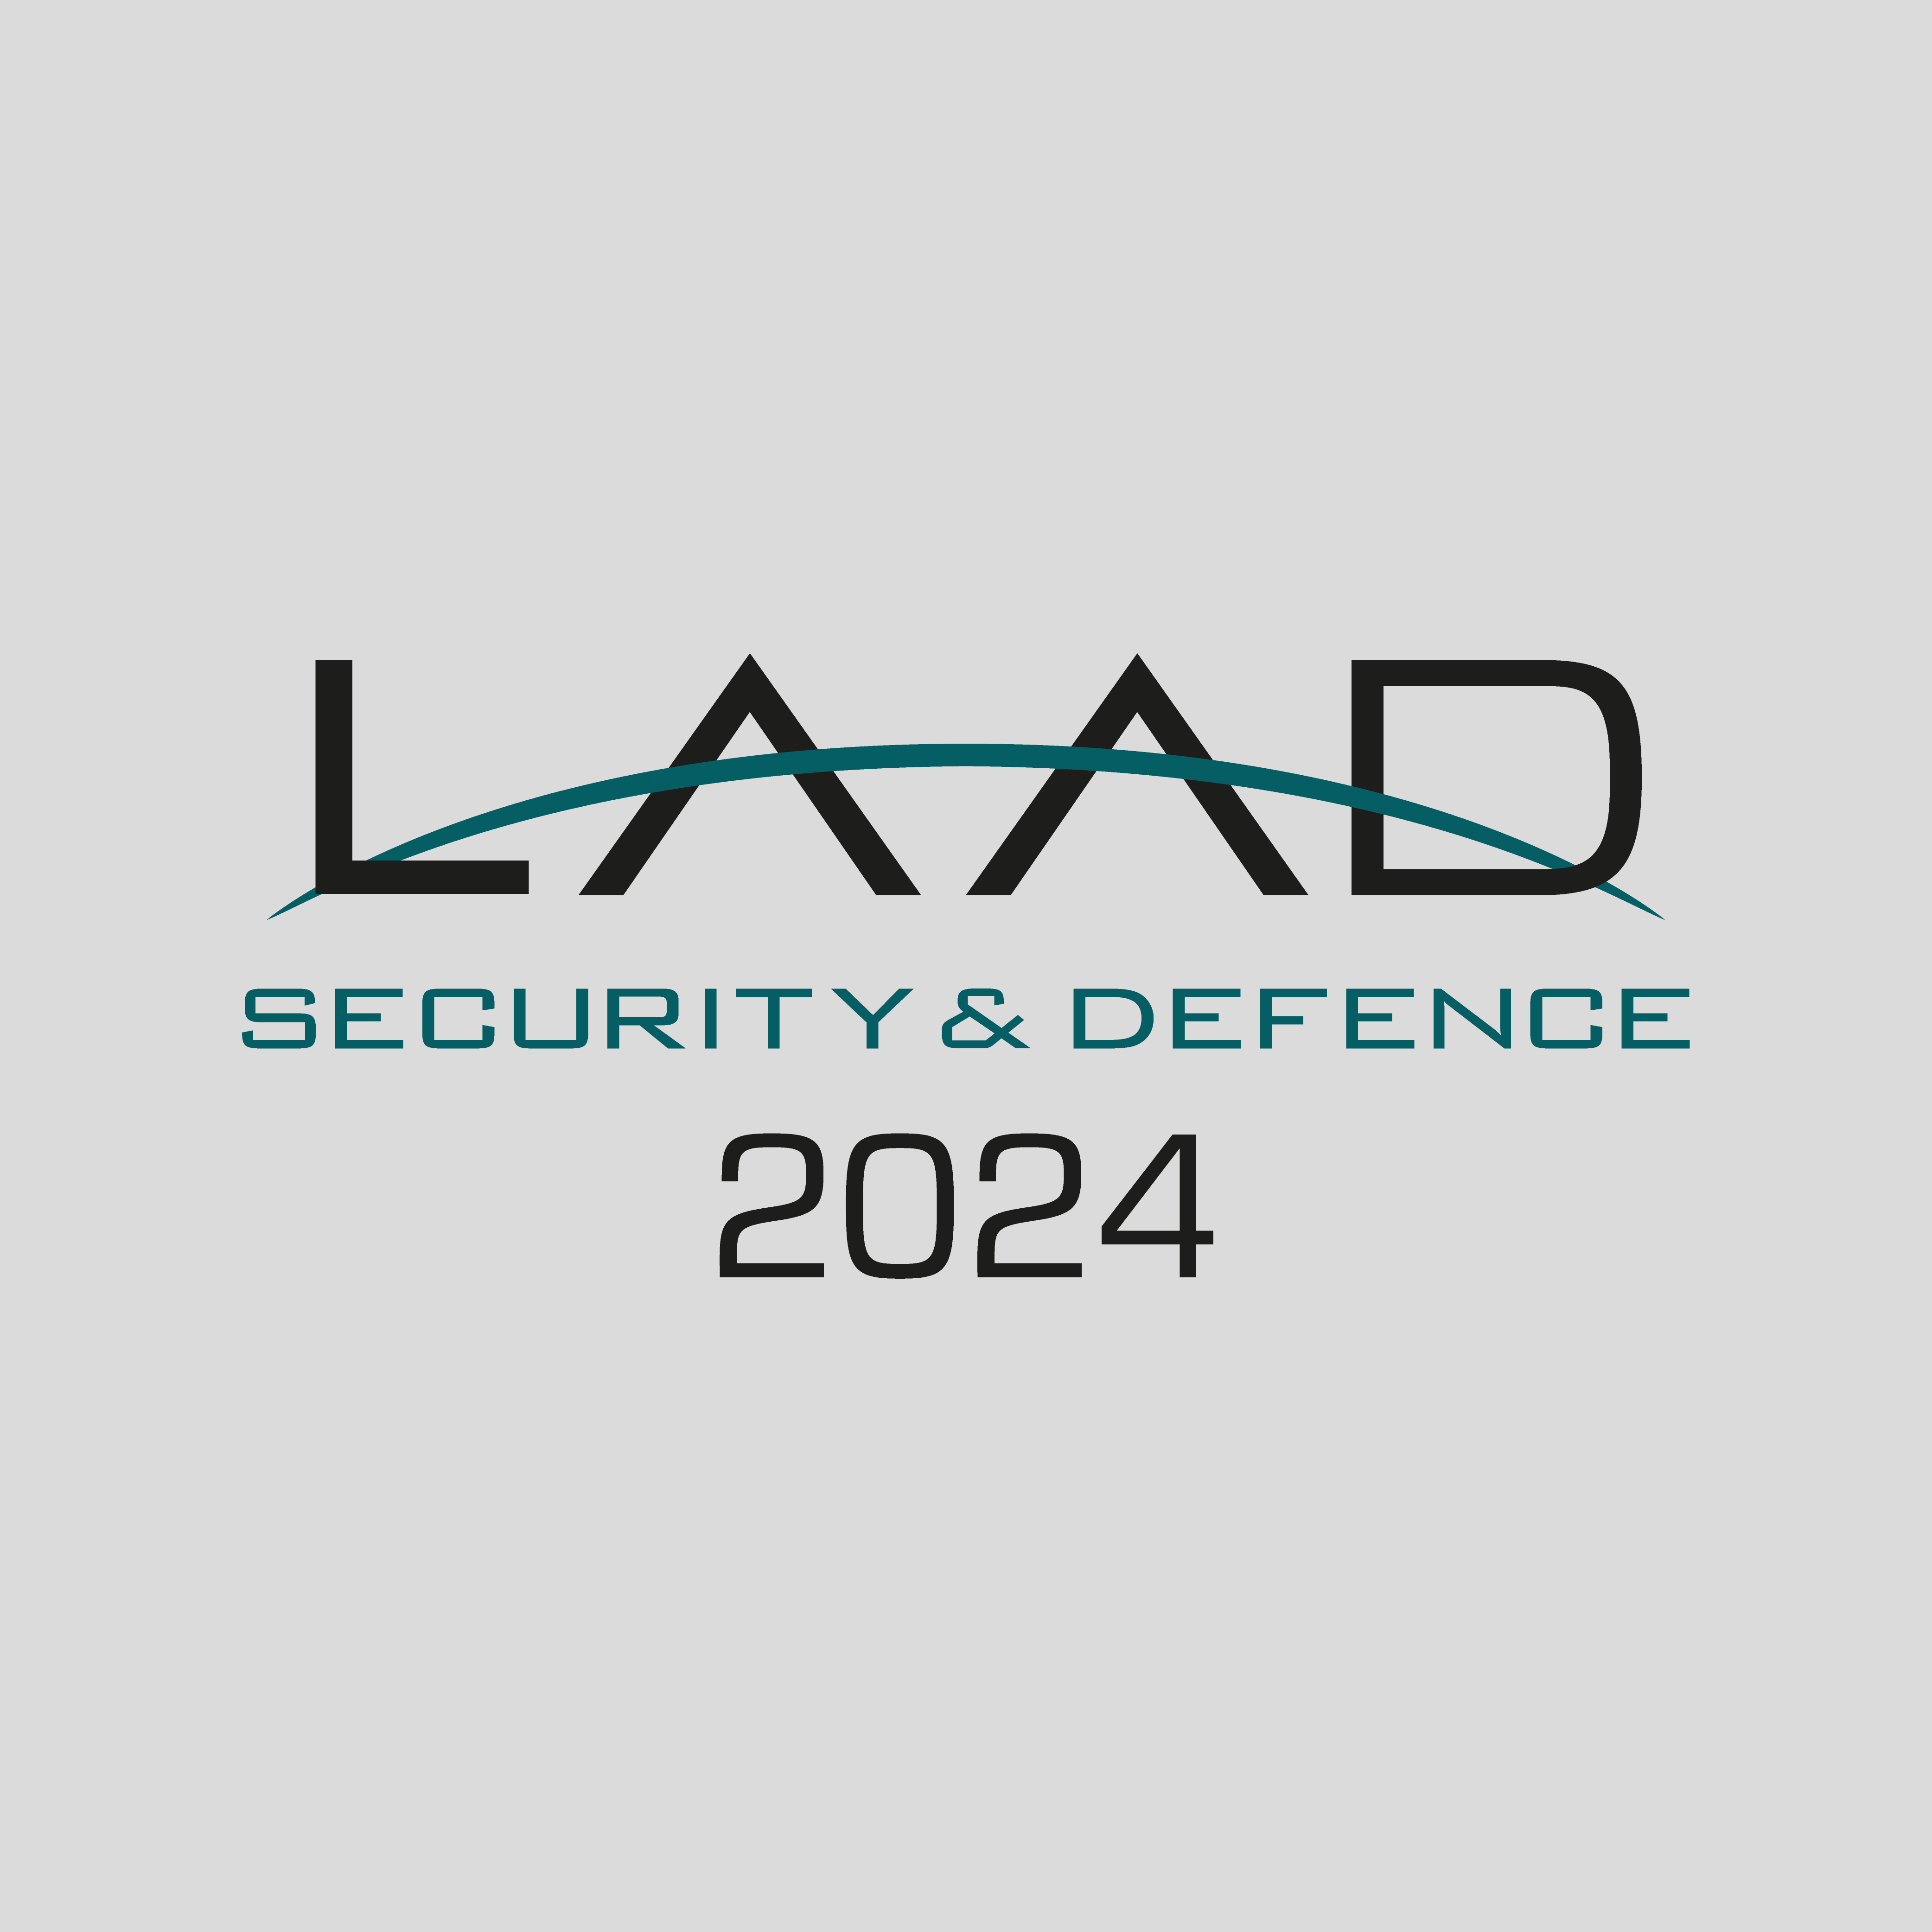 LAAD Security & Defence 2024 LAAD Security & Defence 2026